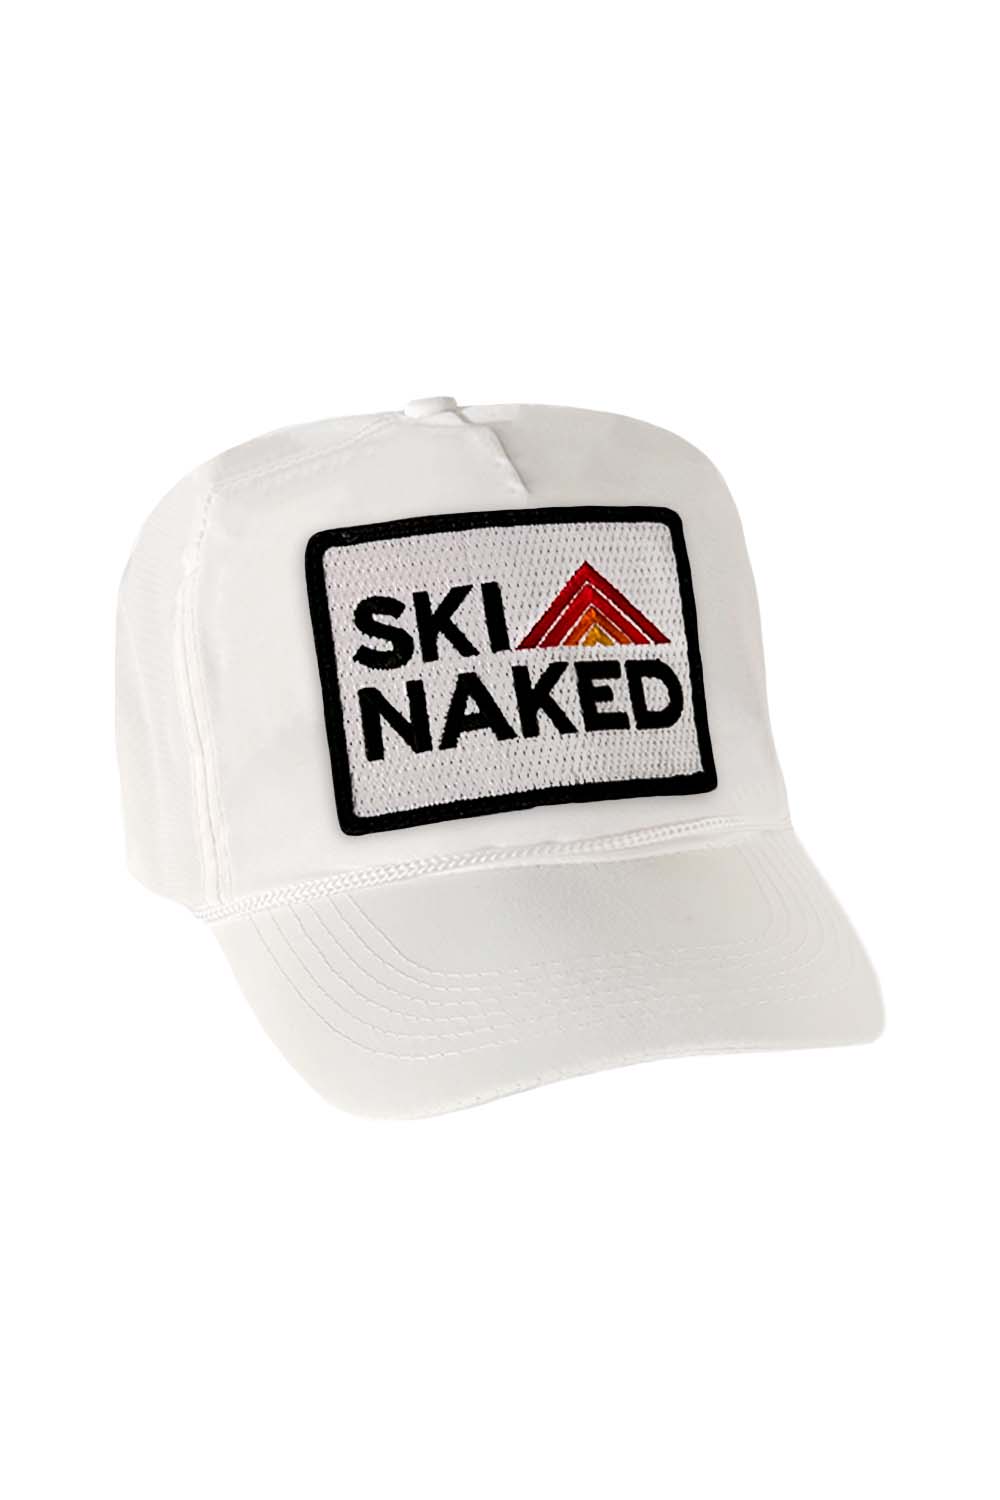 SKI NAKED - VINTAGE NYLON TRUCKER HAT HATS Aviator Nation WHITE 